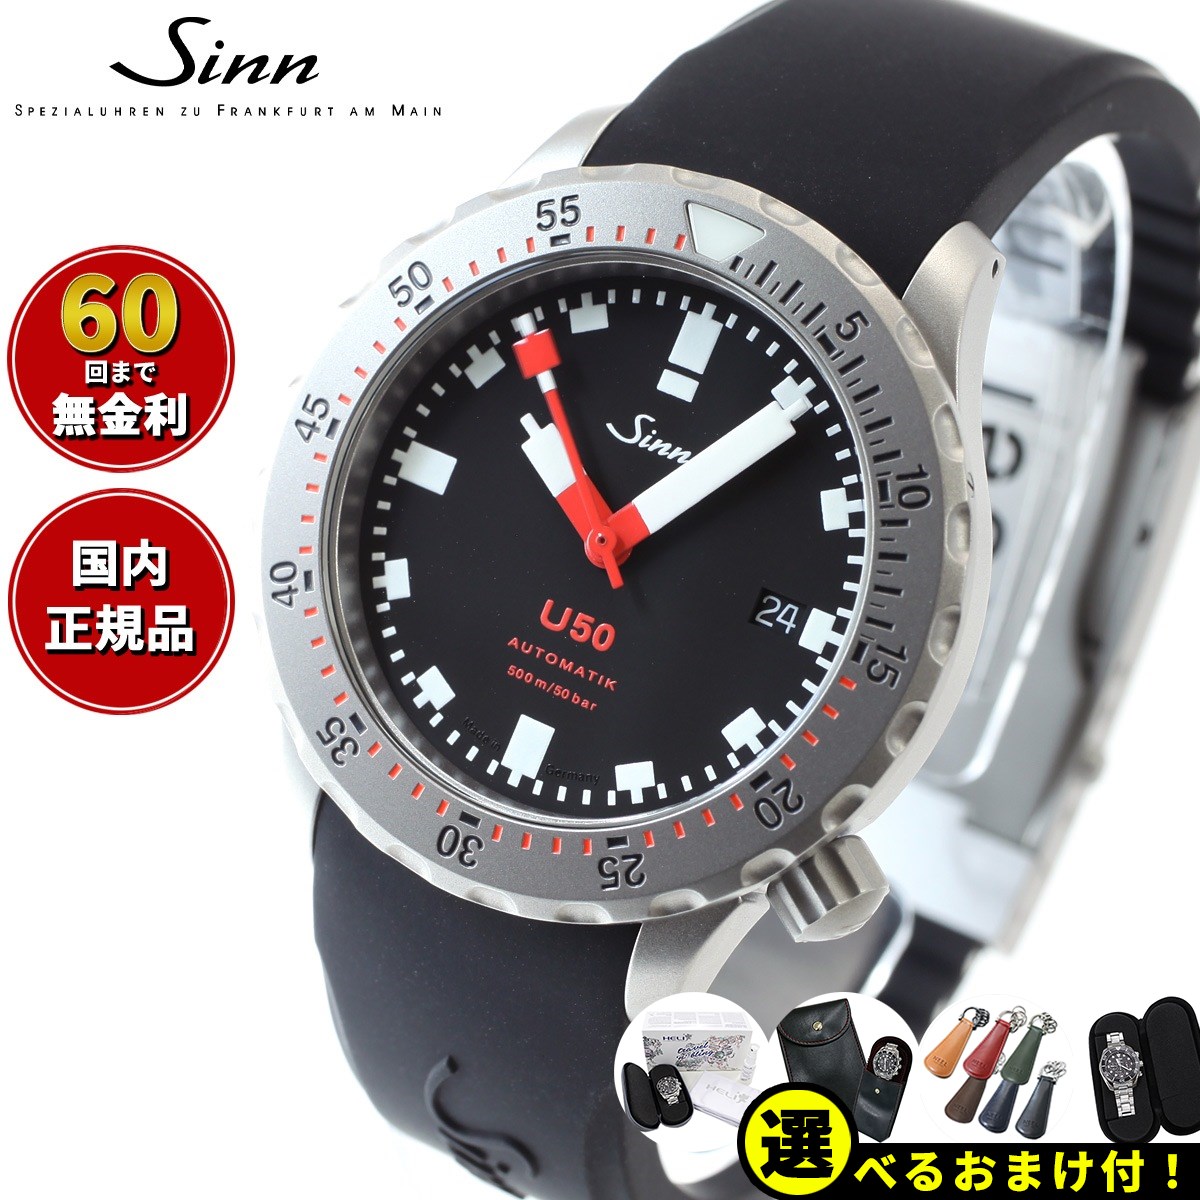 ジン 【選べるノベルティー付き！】【60回分割手数料無料！】Sinn ジン U50 自動巻き 腕時計 メンズ Diving Watches ダイバーズウォッチ シリコンストラップ ドイツ製